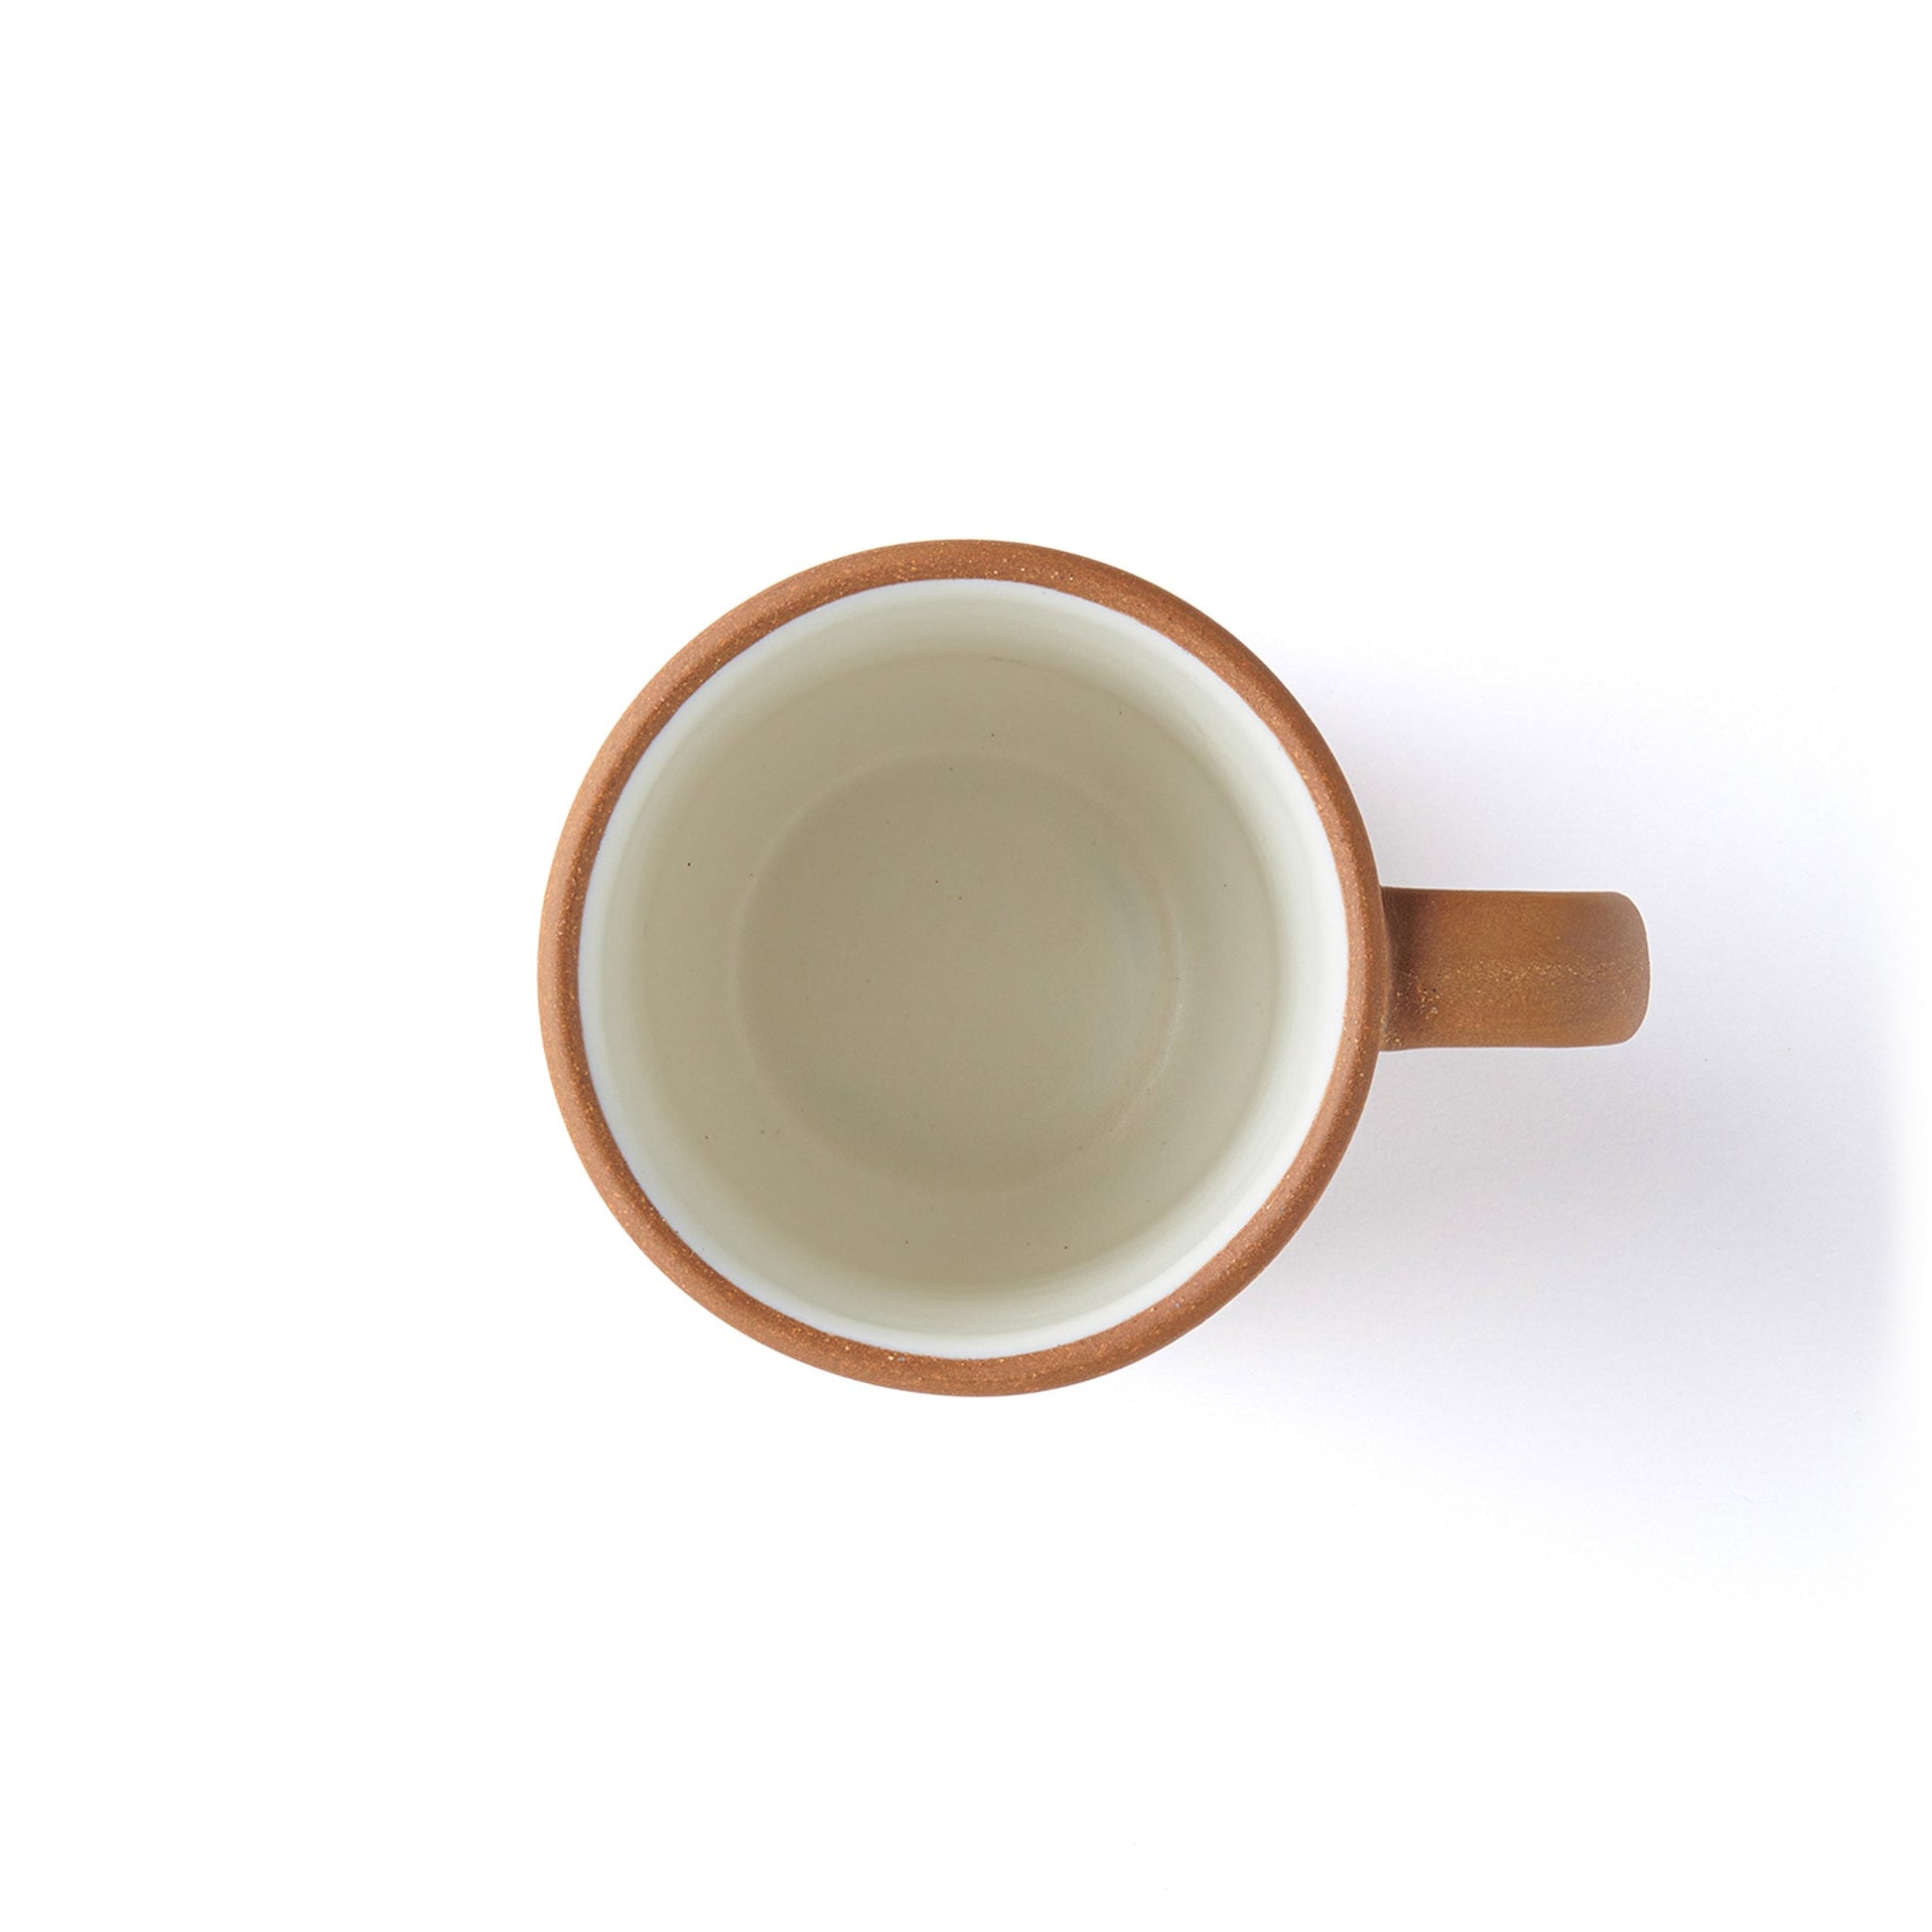 Coffee-Mug-Naked